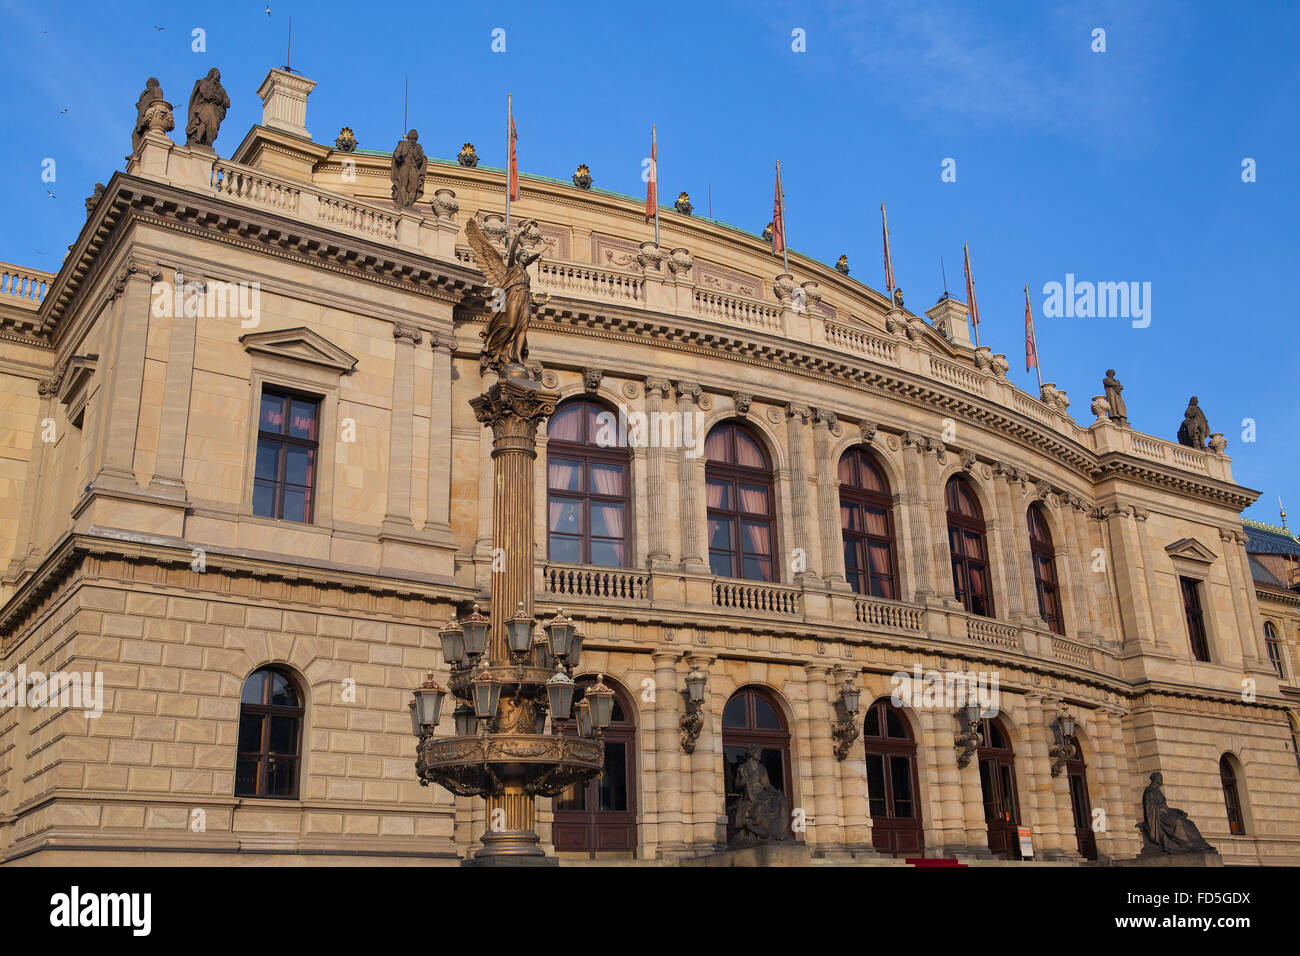 La sala concerti Rudolfinum. Rudolfinum e un auditorium della musica e la casa dell'Orchestra Filarmonica Ceca a Praga Foto Stock